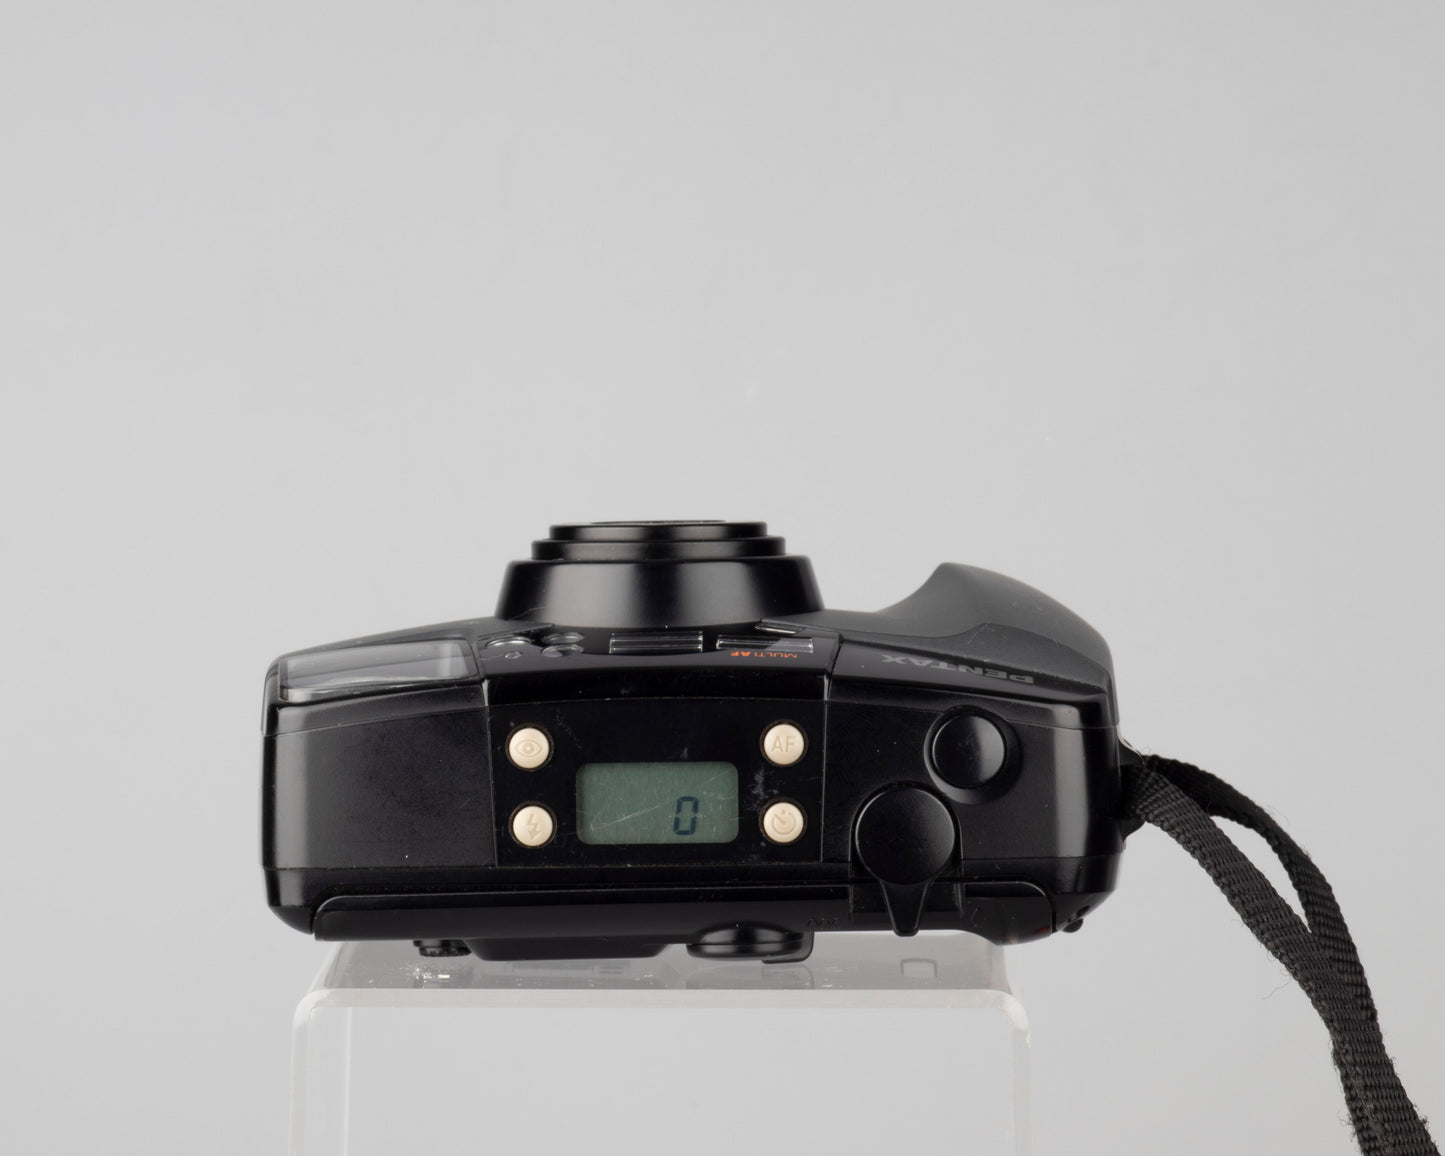 Pentax Espio 105WR 35mm camera w/ original box and manual (serial 1770523)